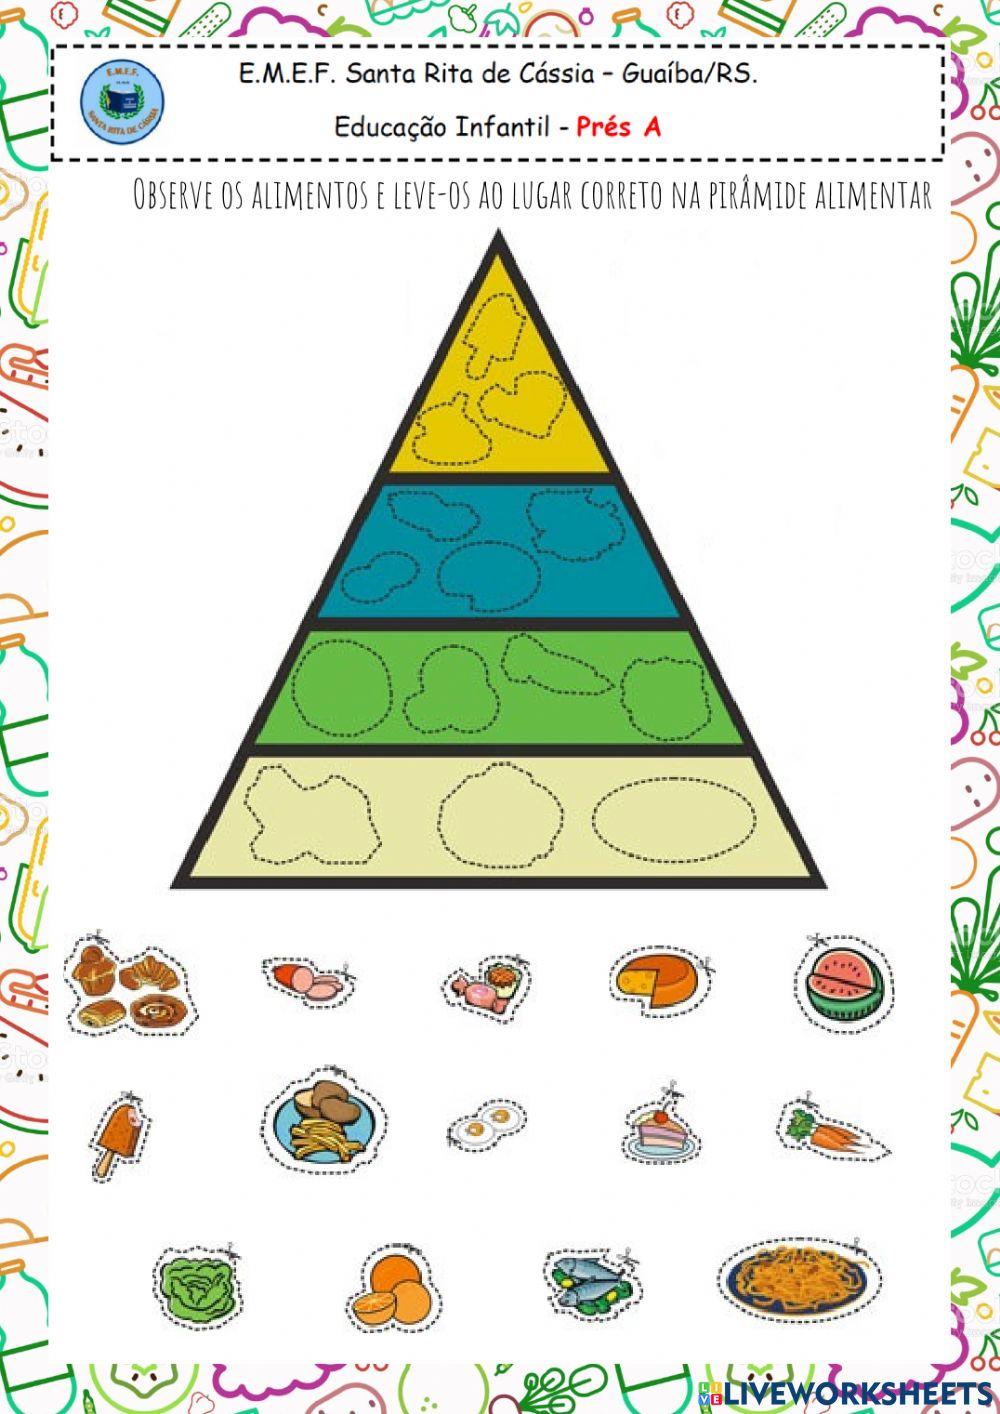 Observe os alimentos e leve-os ao lugar correto na pirâmide alimentar